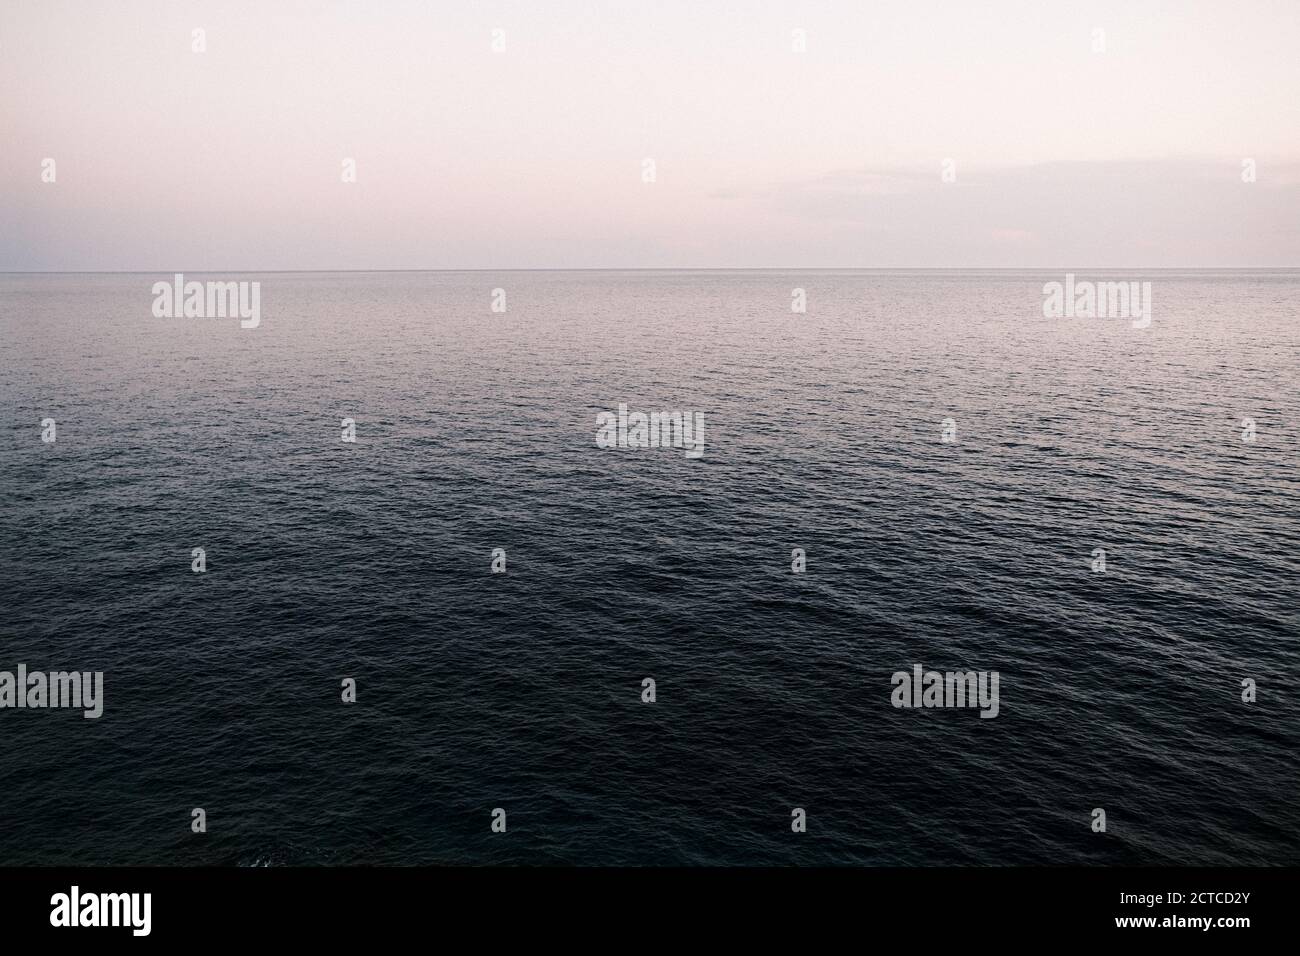 View over open sea, Adriatic sea, Croatia Stock Photo